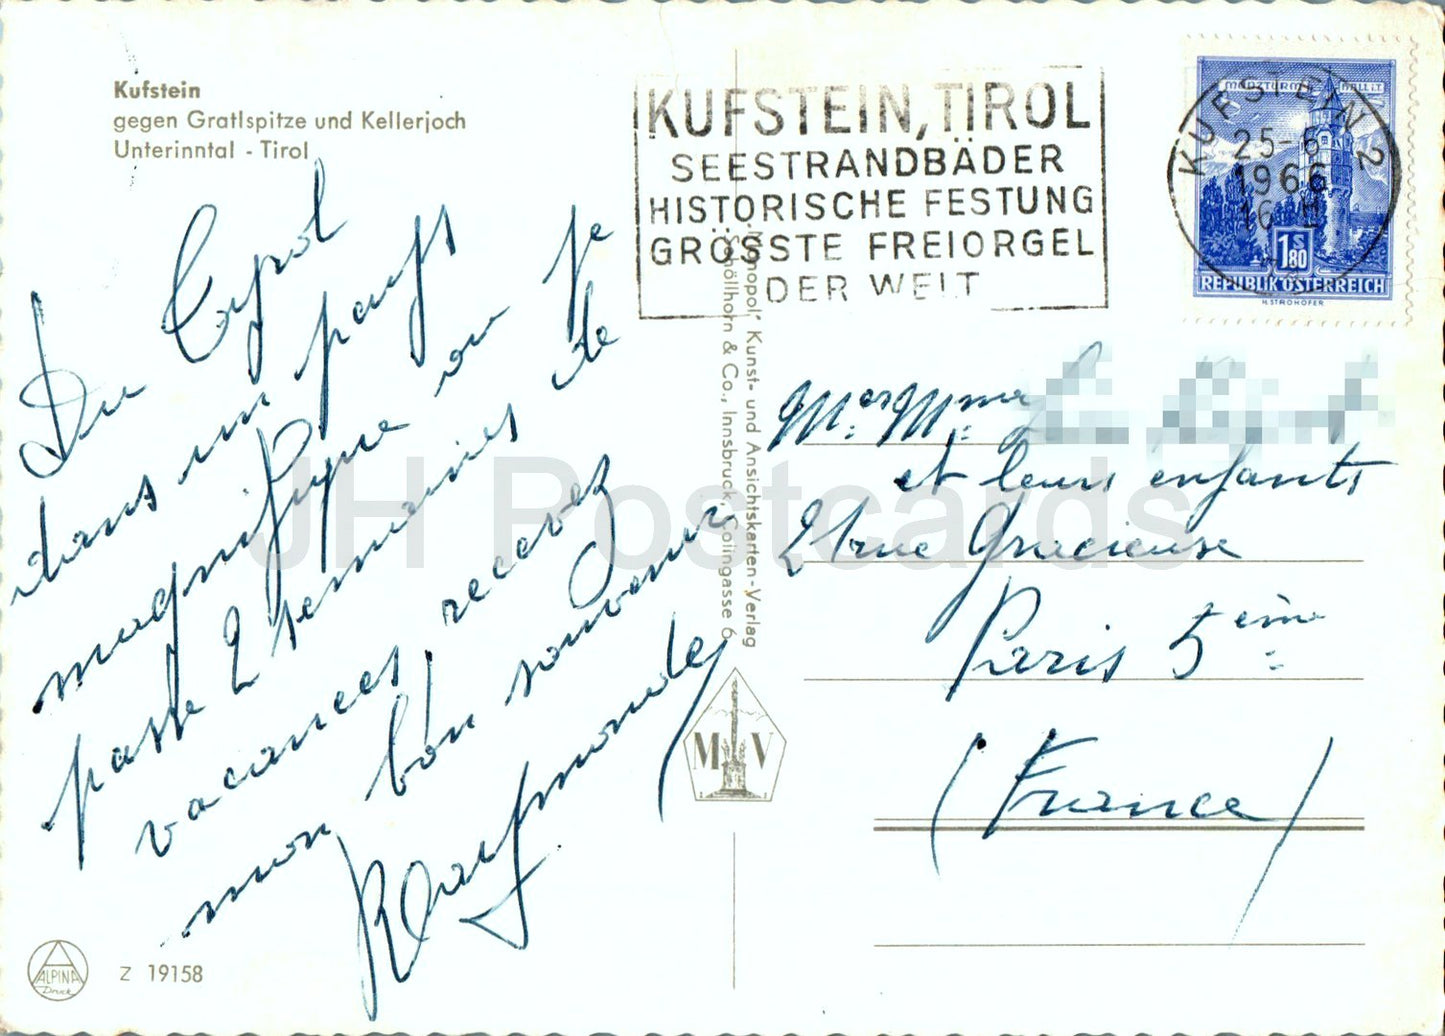 Kufstein gegen Gratlspitze und Kellerjoch - Tirol - 19158 - 1966 - Österreich - gebraucht 